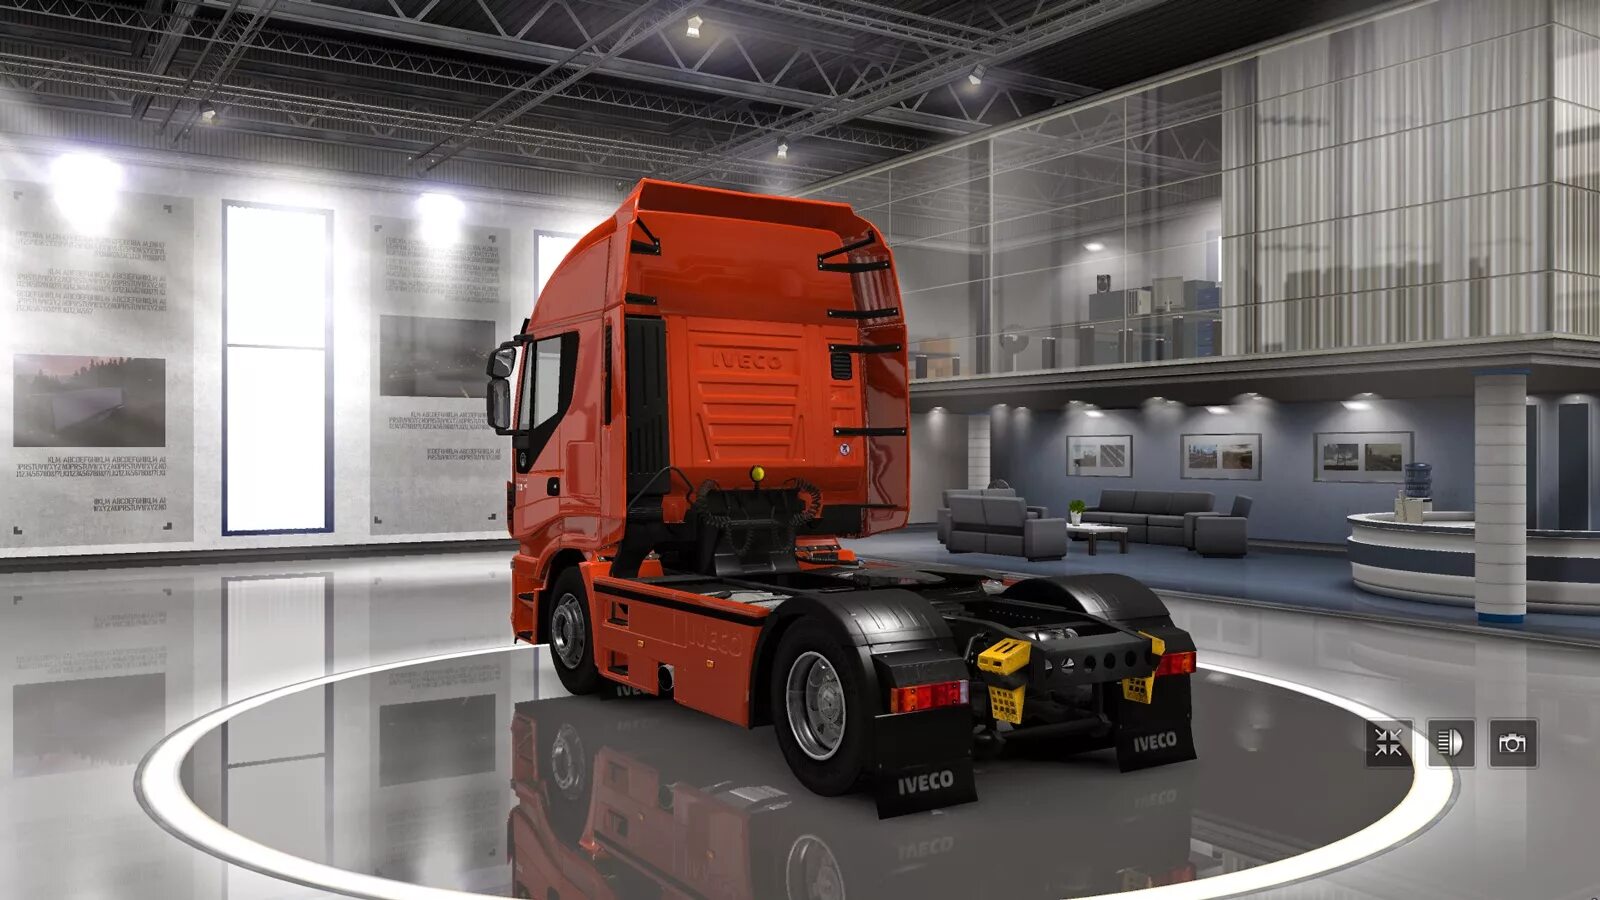 Включи евро 2. Грузовики етс 2 Ивеко. Iveco ETS 2. Euro Truck Simulator 2 Iveco. Euro Truck Simulator 1.